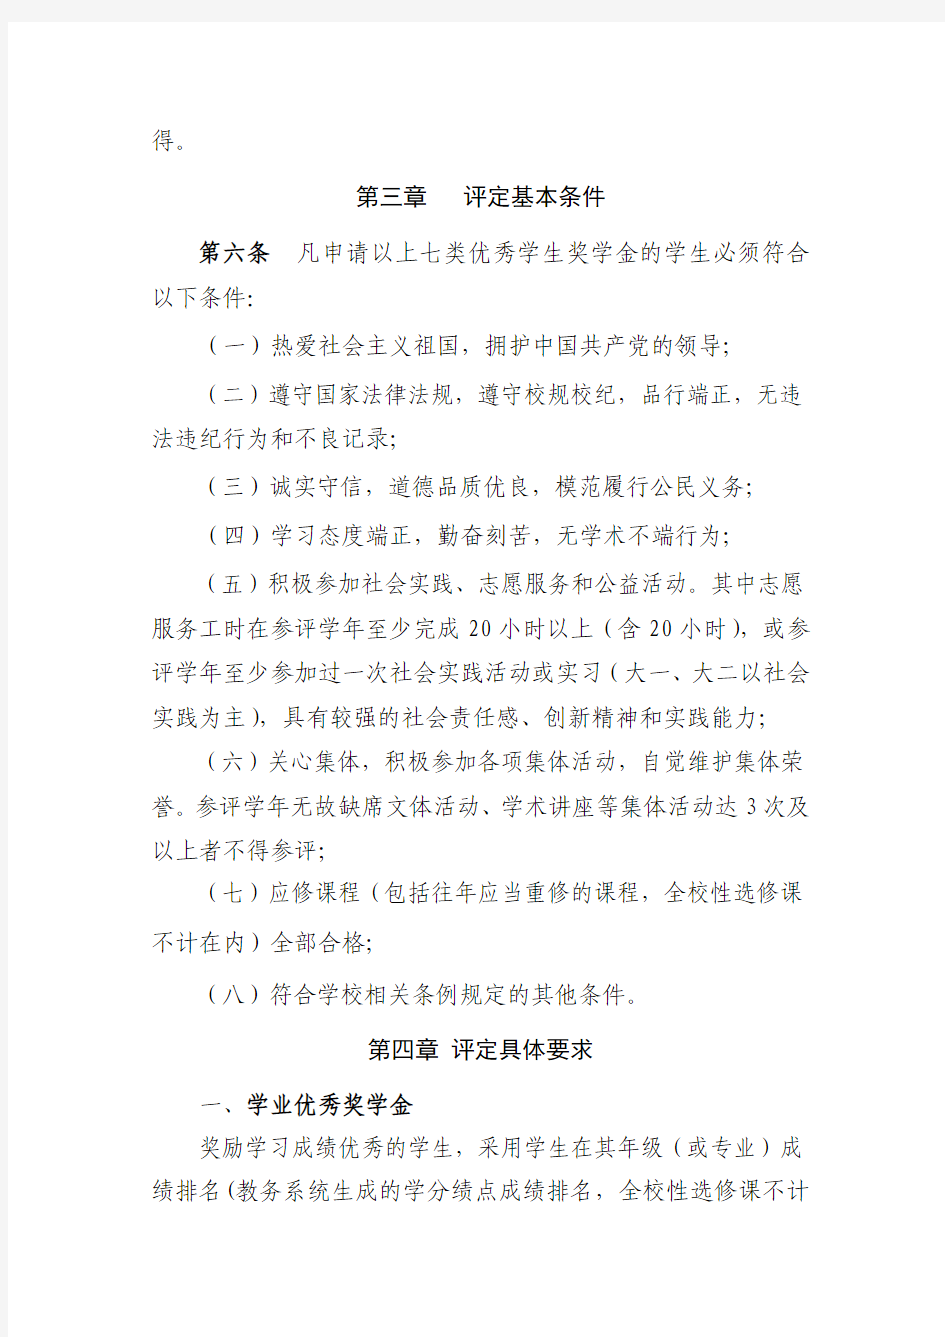 厦门大学经济学院本科生优秀学生奖学金评选细则-Xiamen